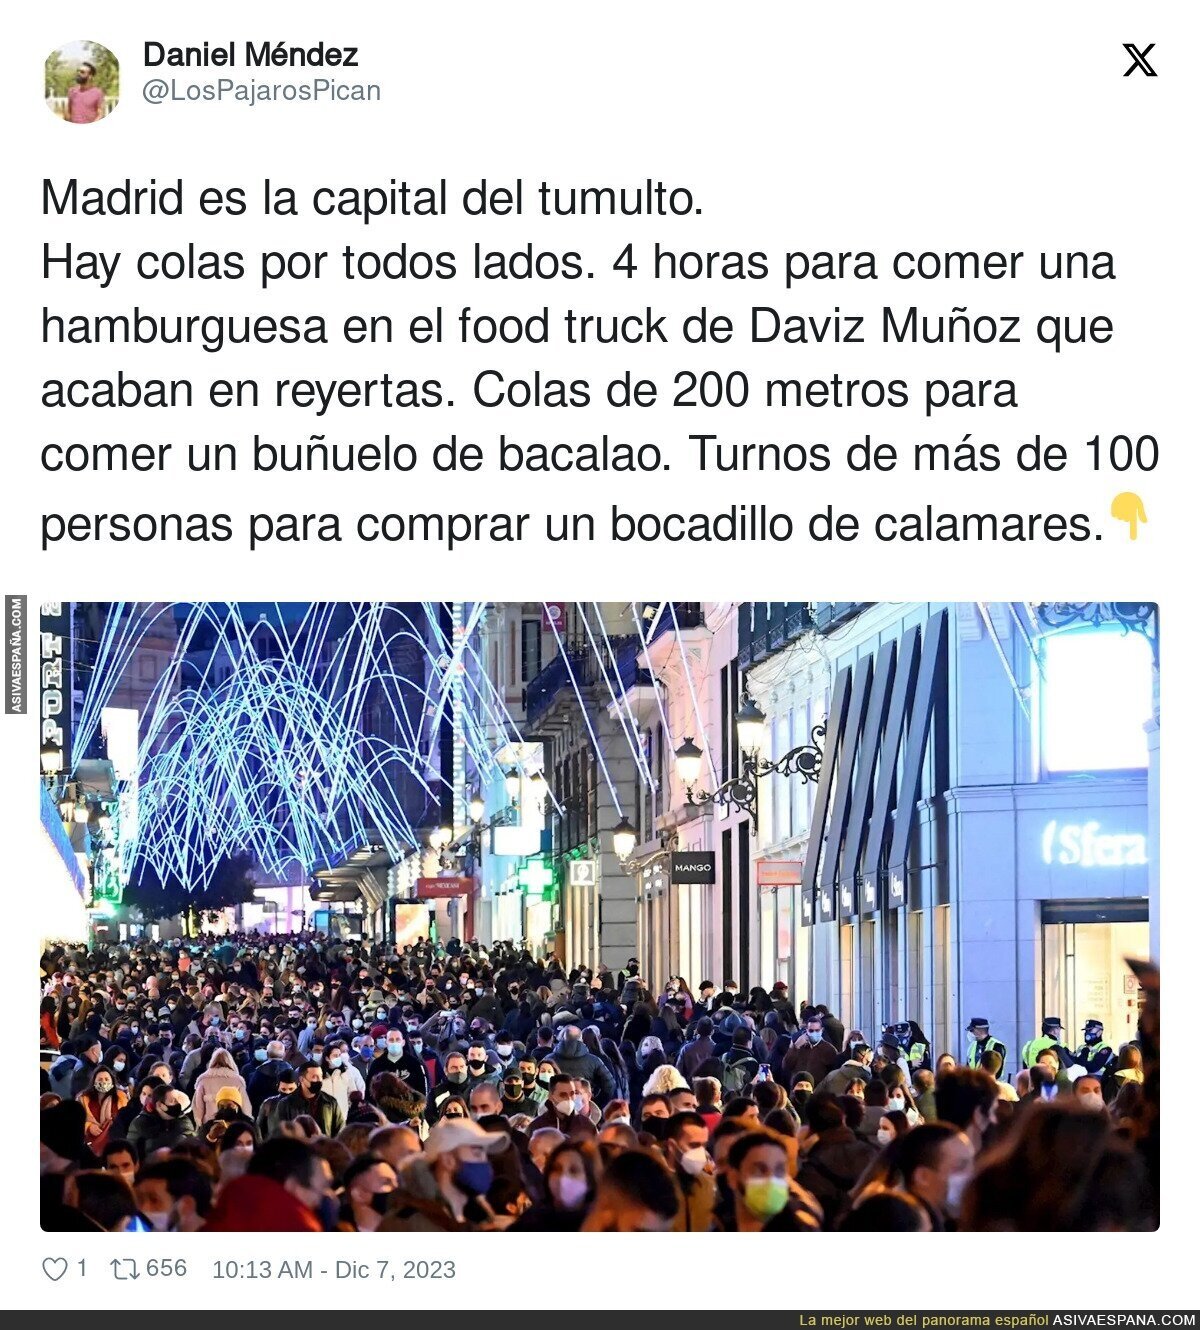 Madrid es la ciudad de las colas